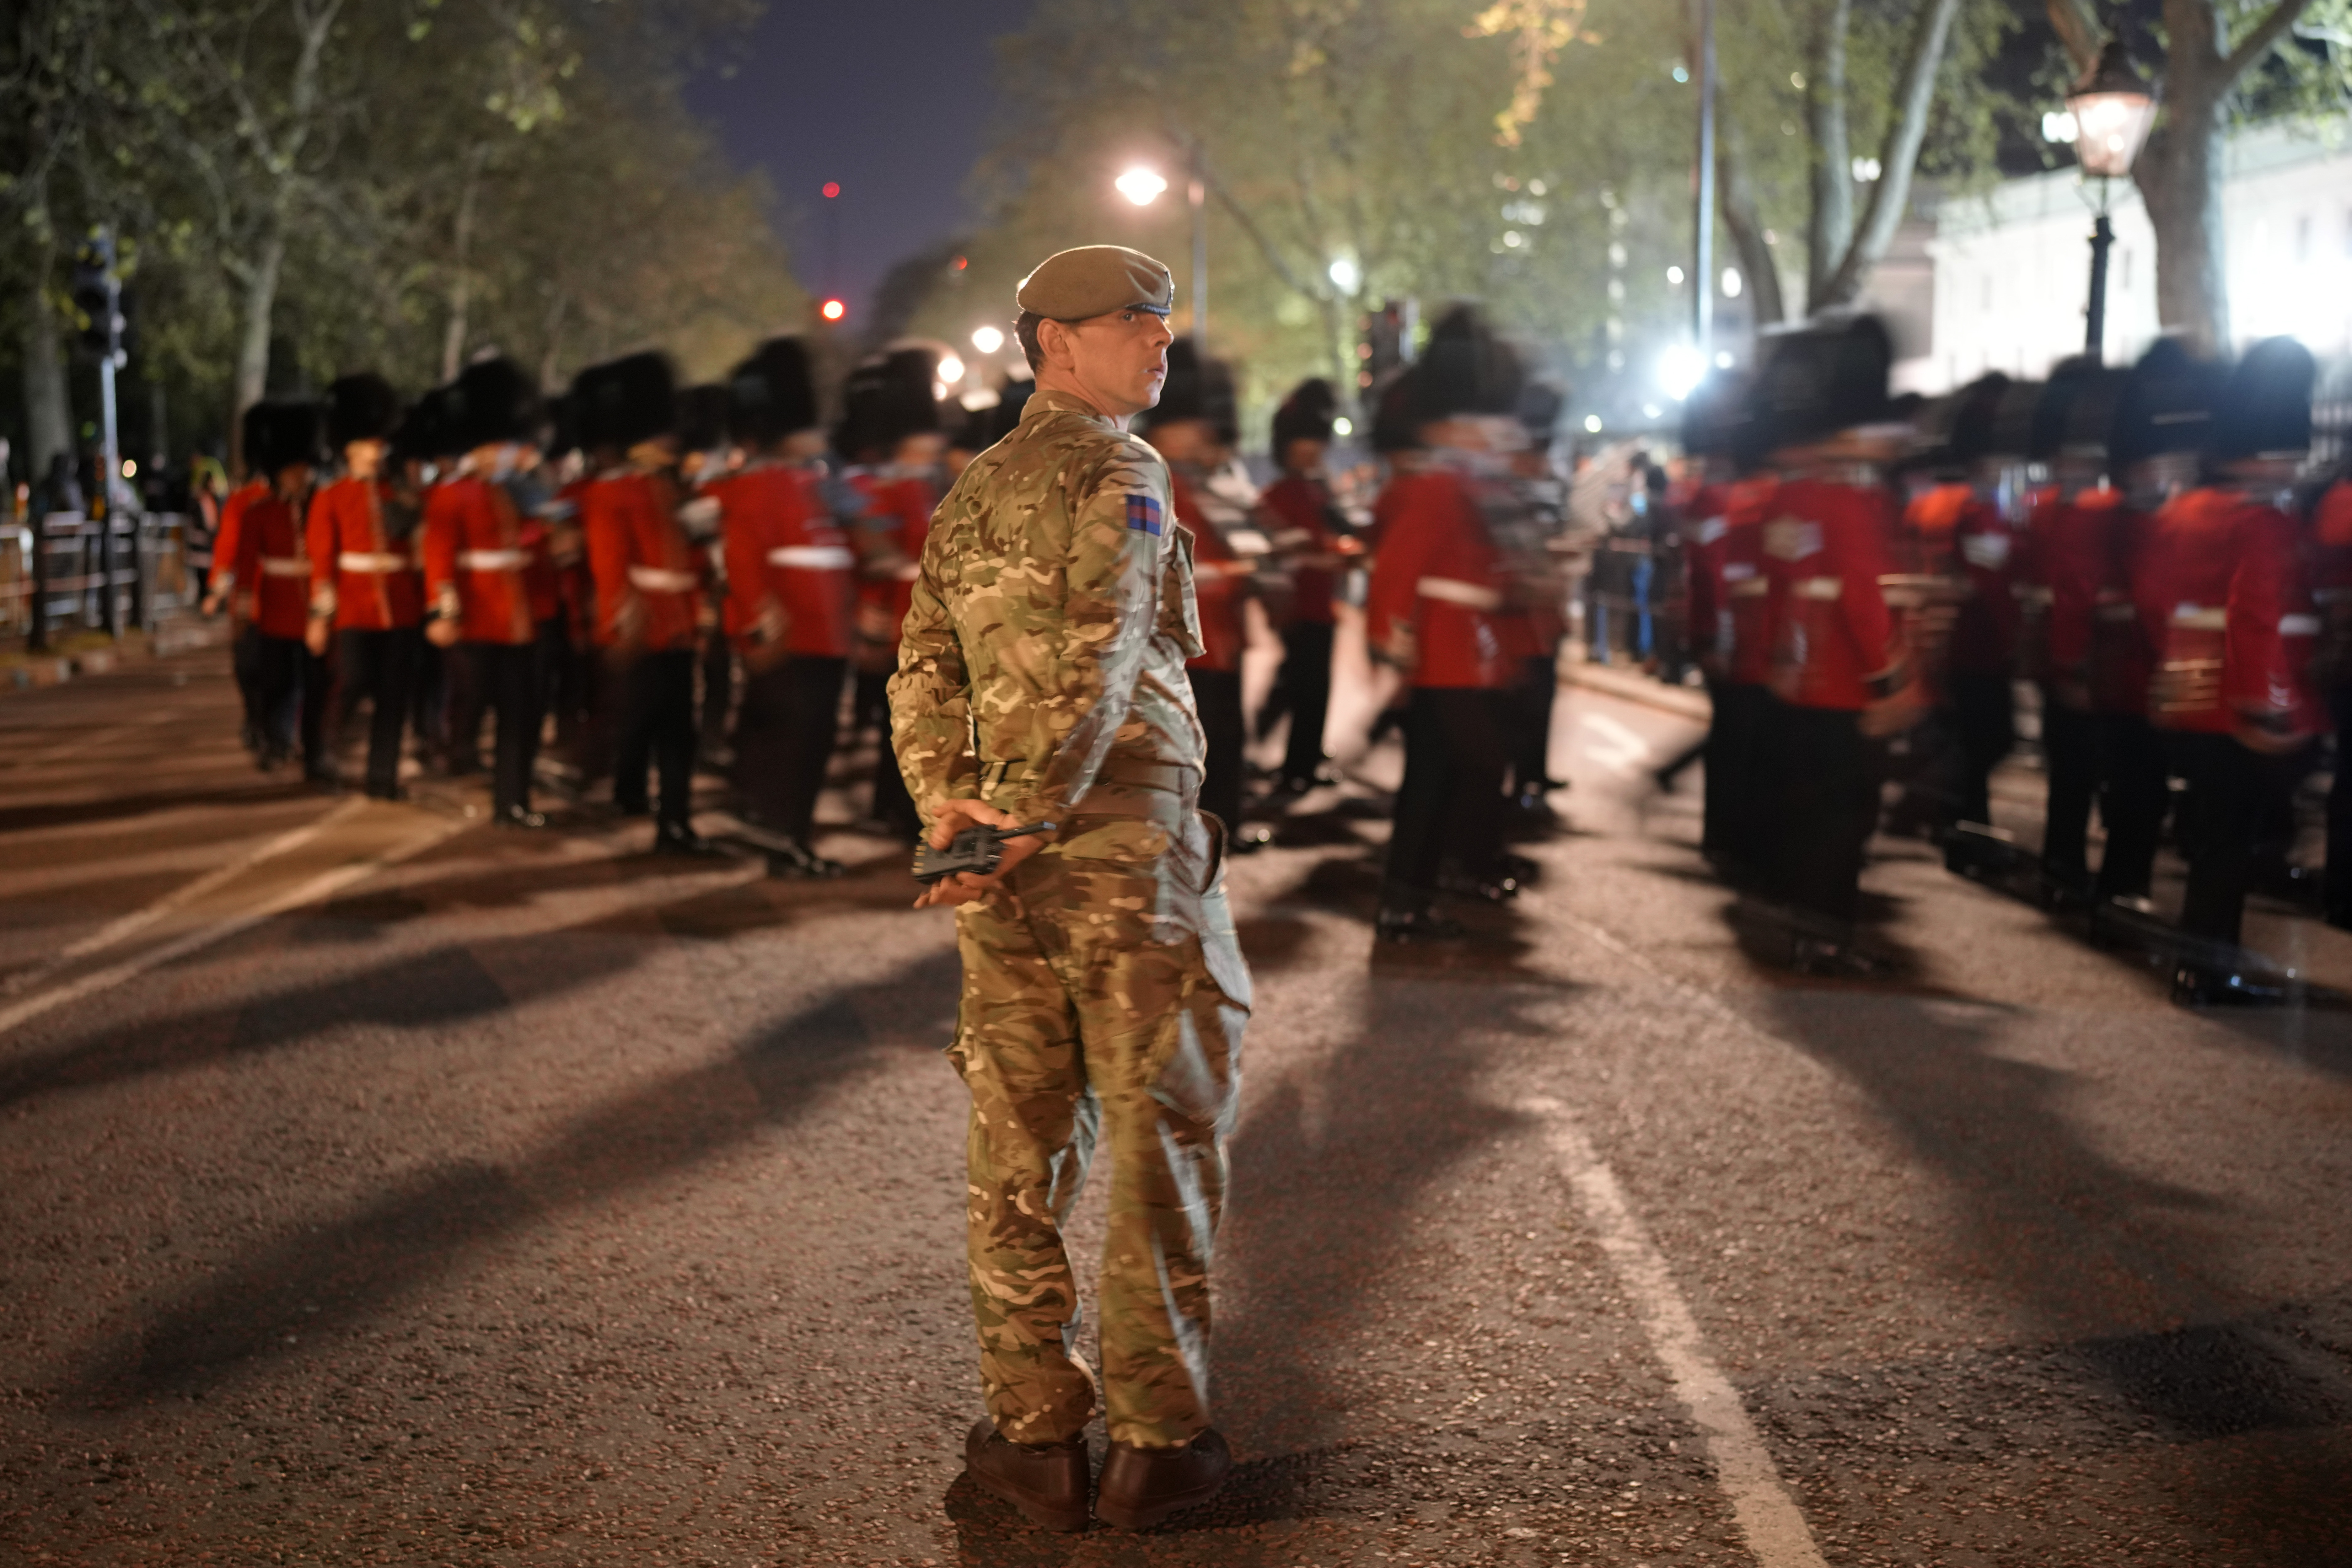 Miembros de la marcha militar cerca del Palacio de Buckingham en el centro de Londres (AP Photo/Vadim Ghirda)